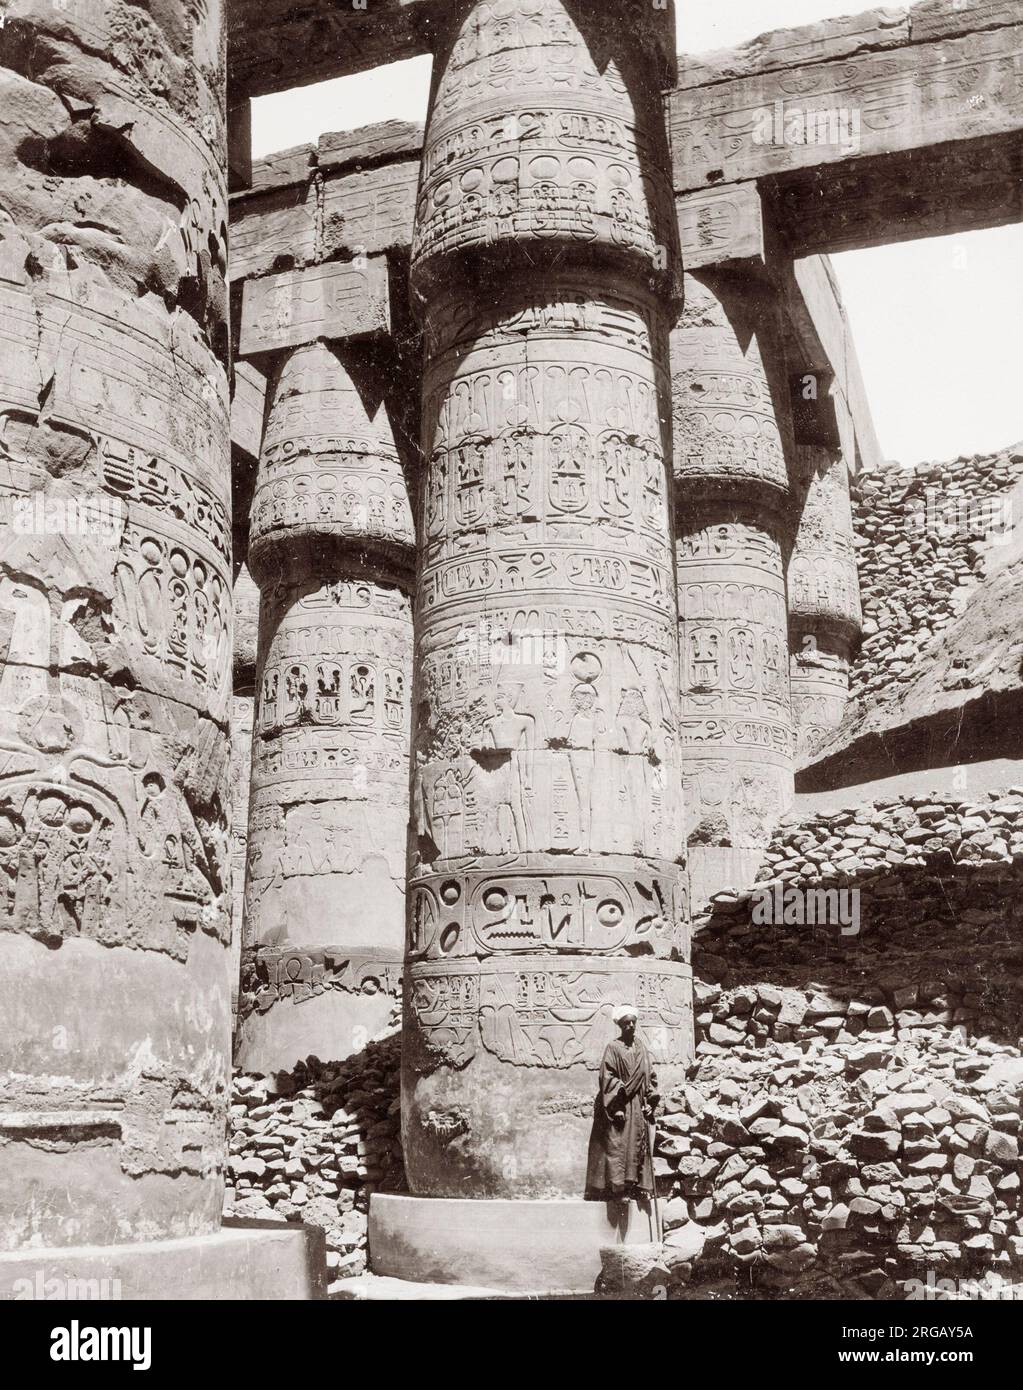 Photographie vintage du XIXe siècle : ruines antiques de piliers sculptés, Égypte, avec figure. Banque D'Images